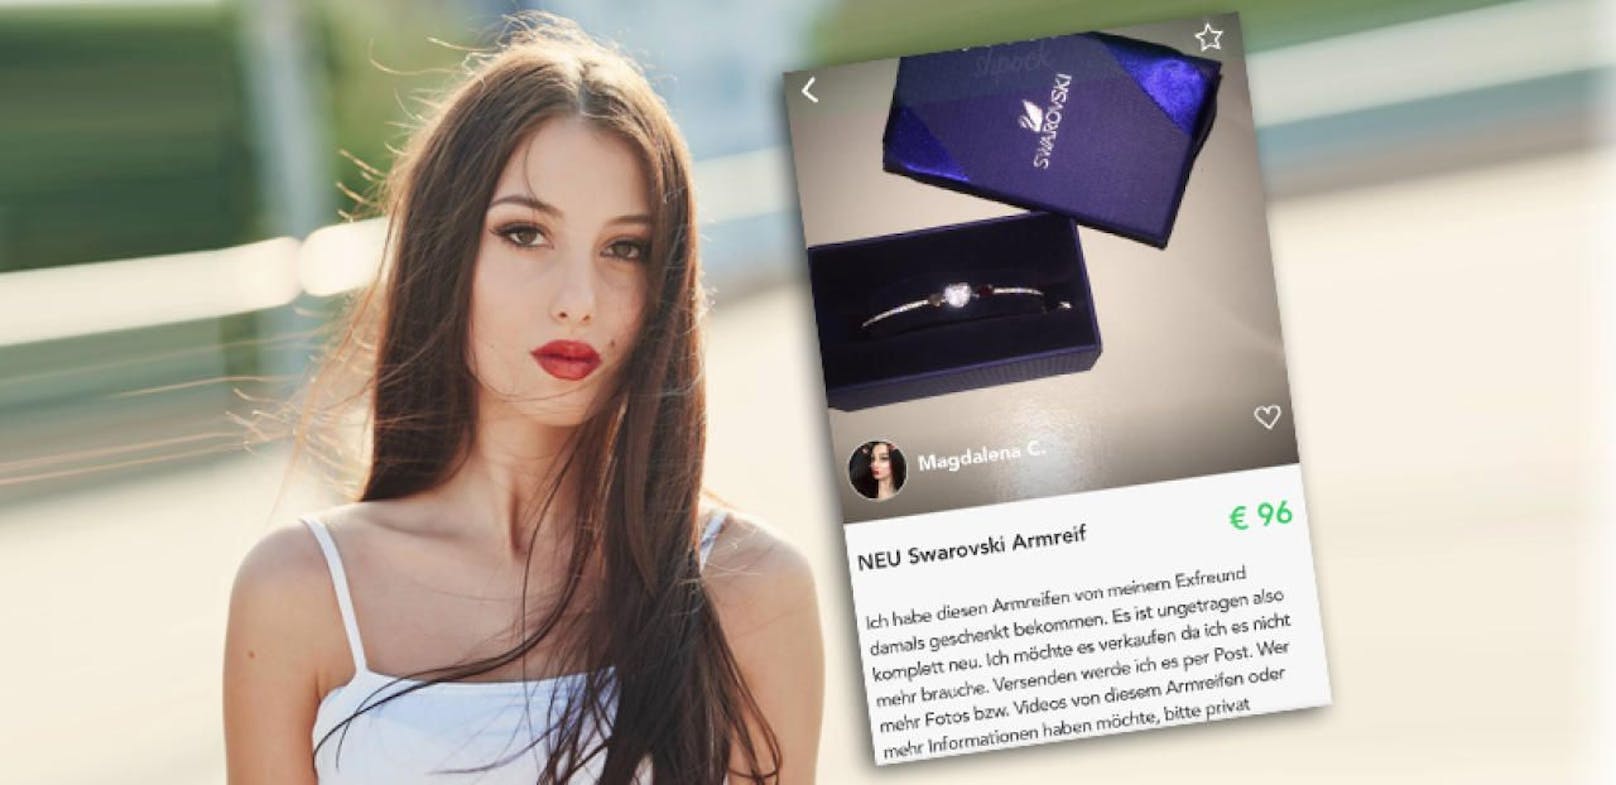 Model Magdalena C. verkauft den Armreif, den sie von ihrem Ex-Freund bekommen hat, auf Shpock.